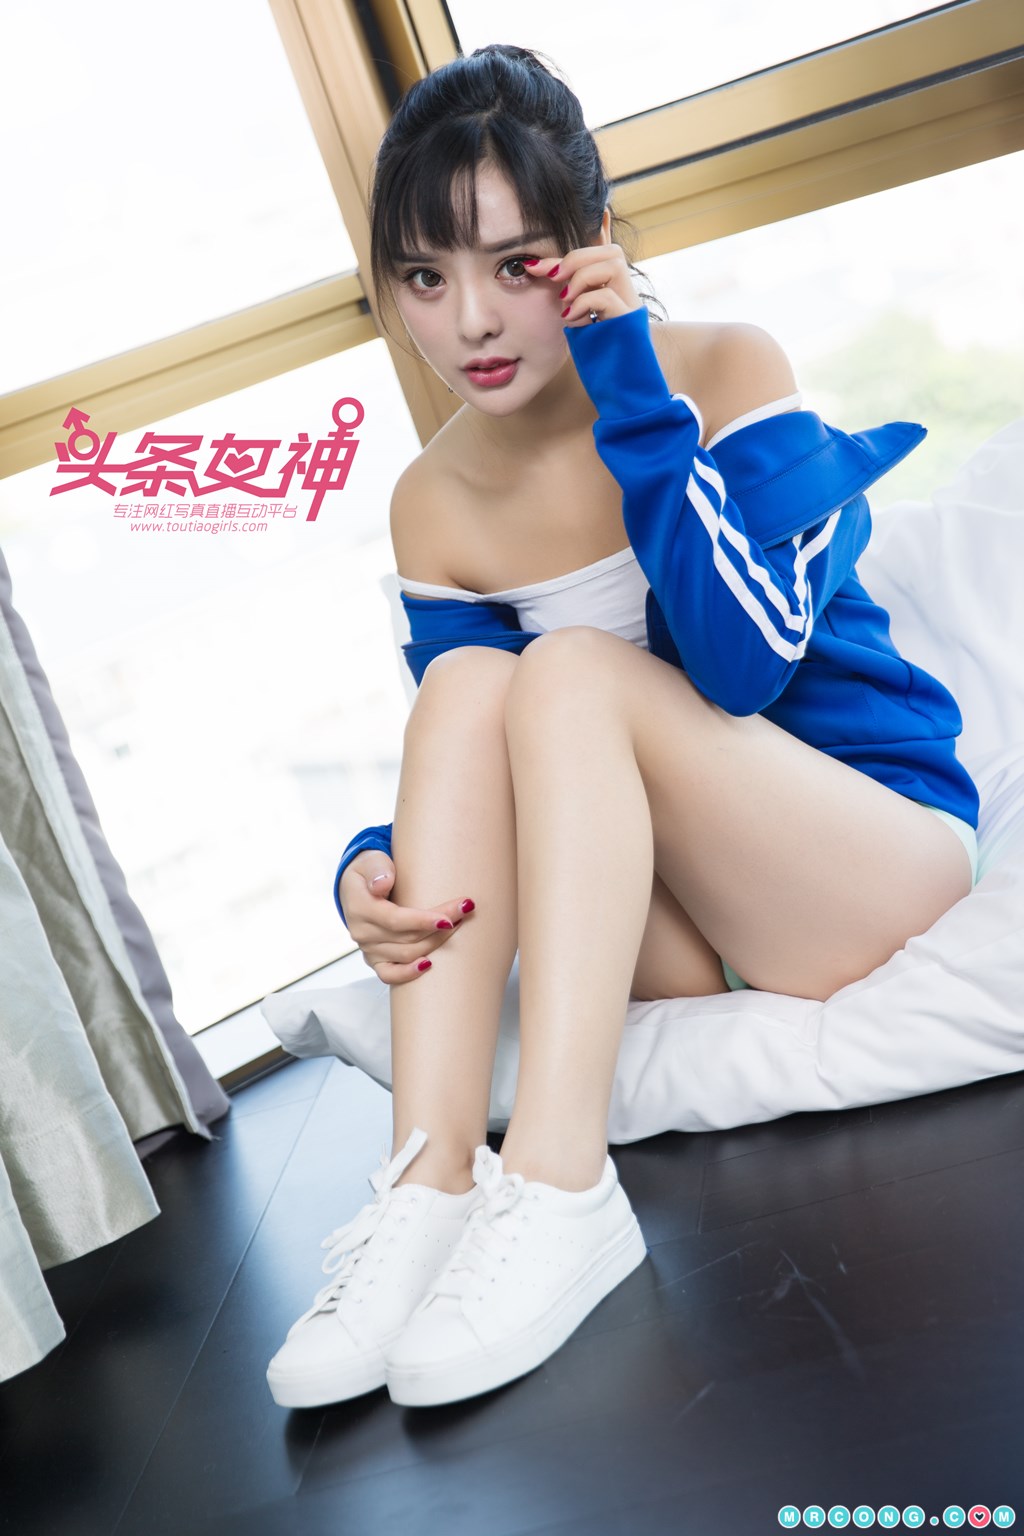 TouTiao 2017-11-26: Model Zhou Xi Yan (周 熙 妍) (23 photos) photo 1-15